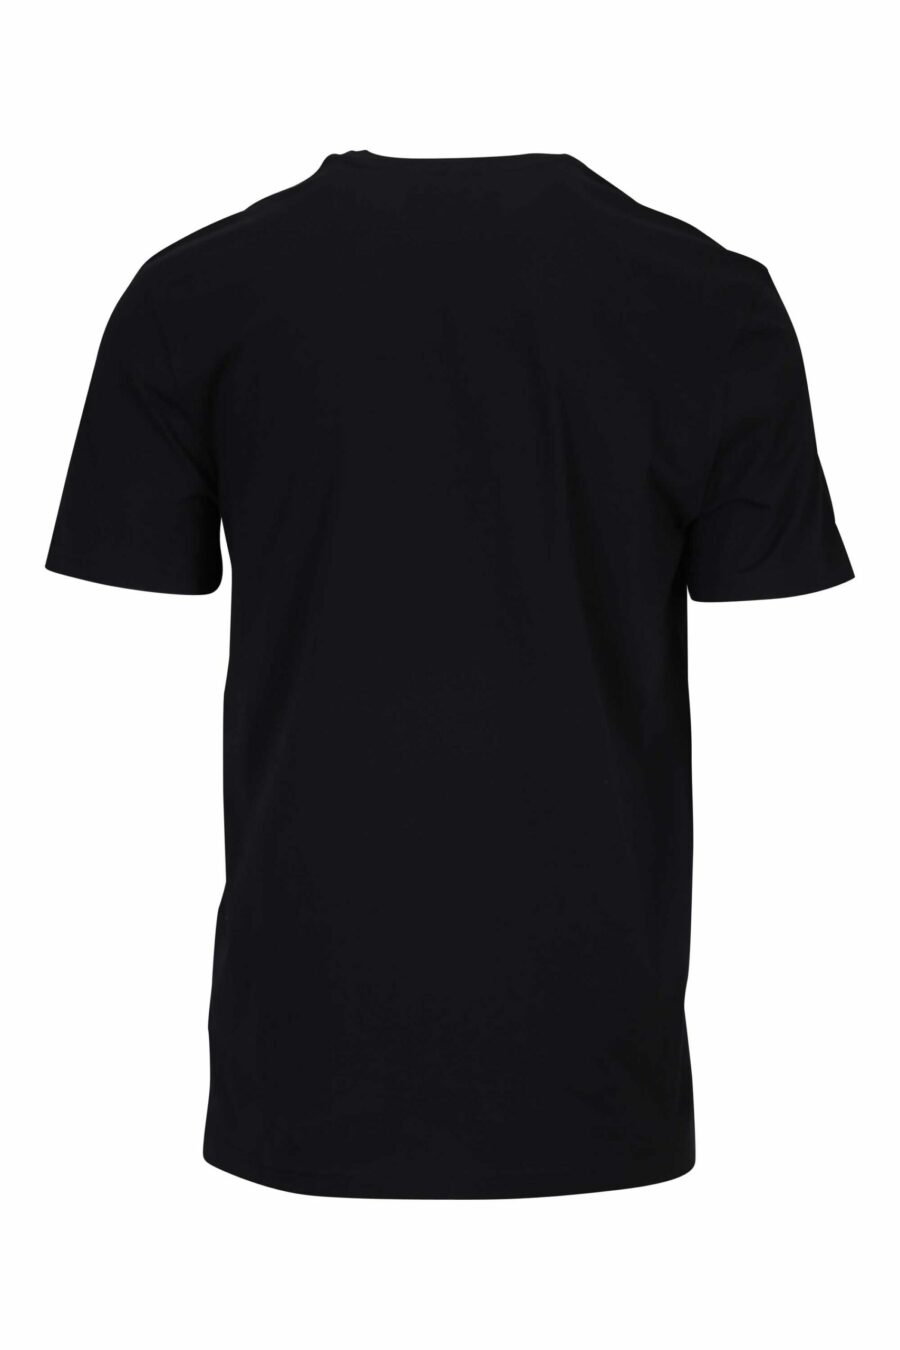 T-shirt noir avec mini-étiquette logo blanche - 667113394862 1 à l'échelle